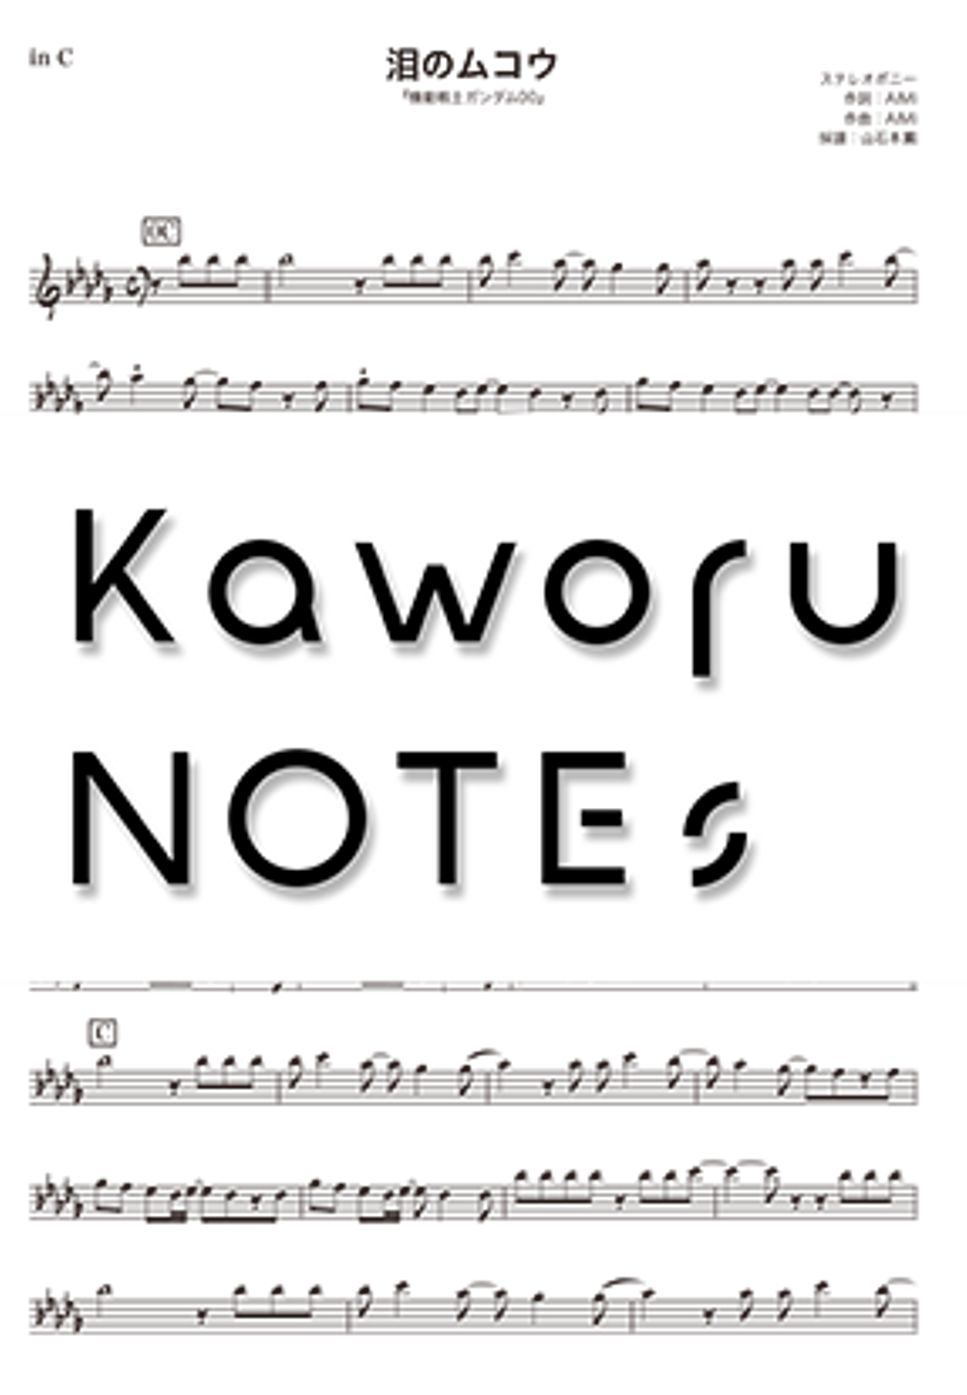 ステレオポニー - 泪のムコウ（in B♭『機動戦士ガンダム00』） by Kaworu NOTEs